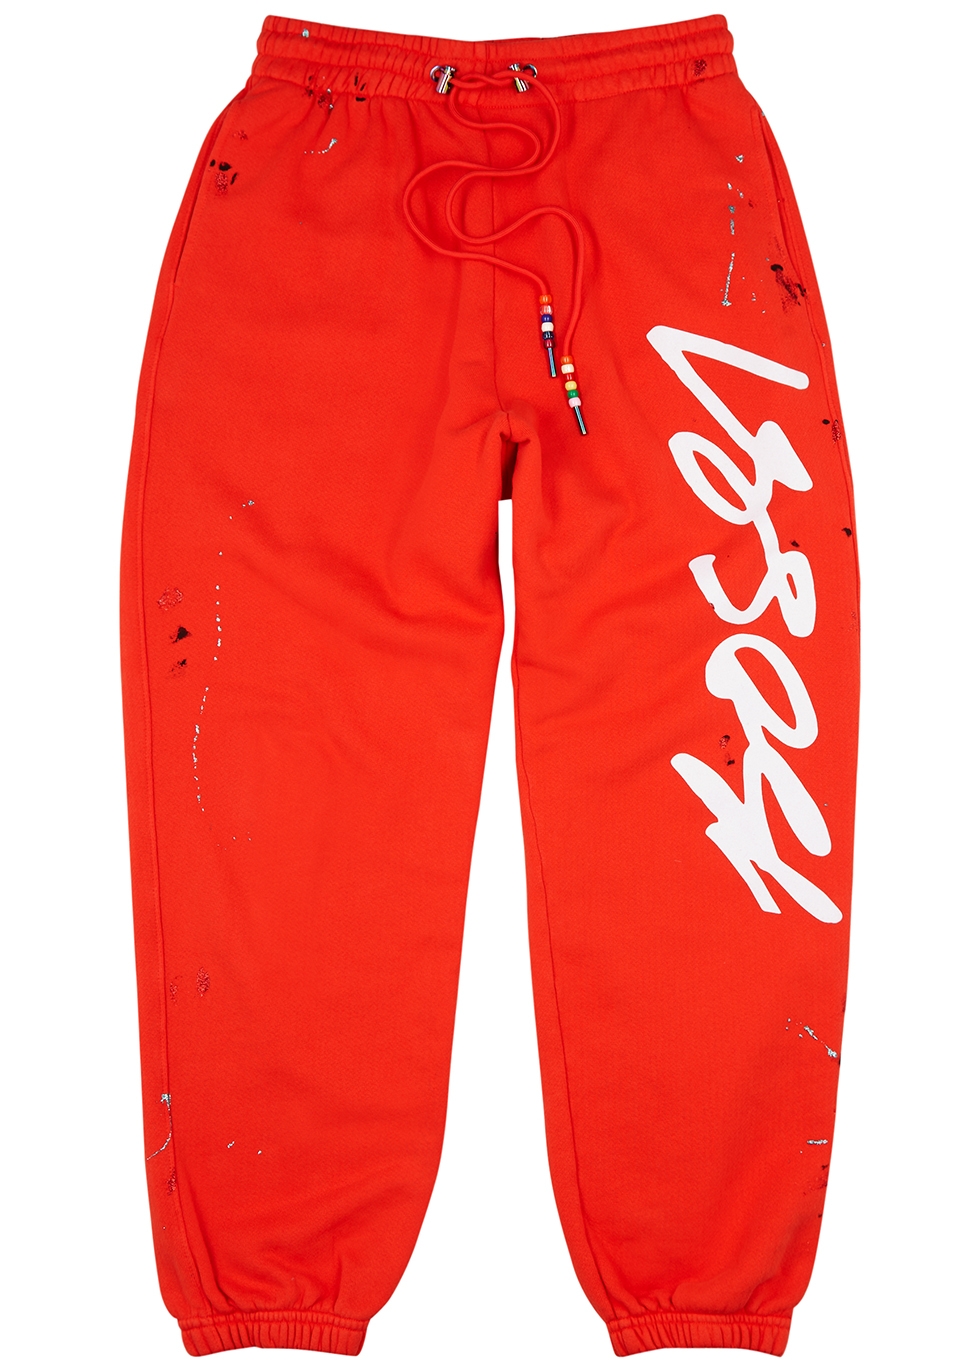 BOSSI Sportswear Red logo cotton sweatpants